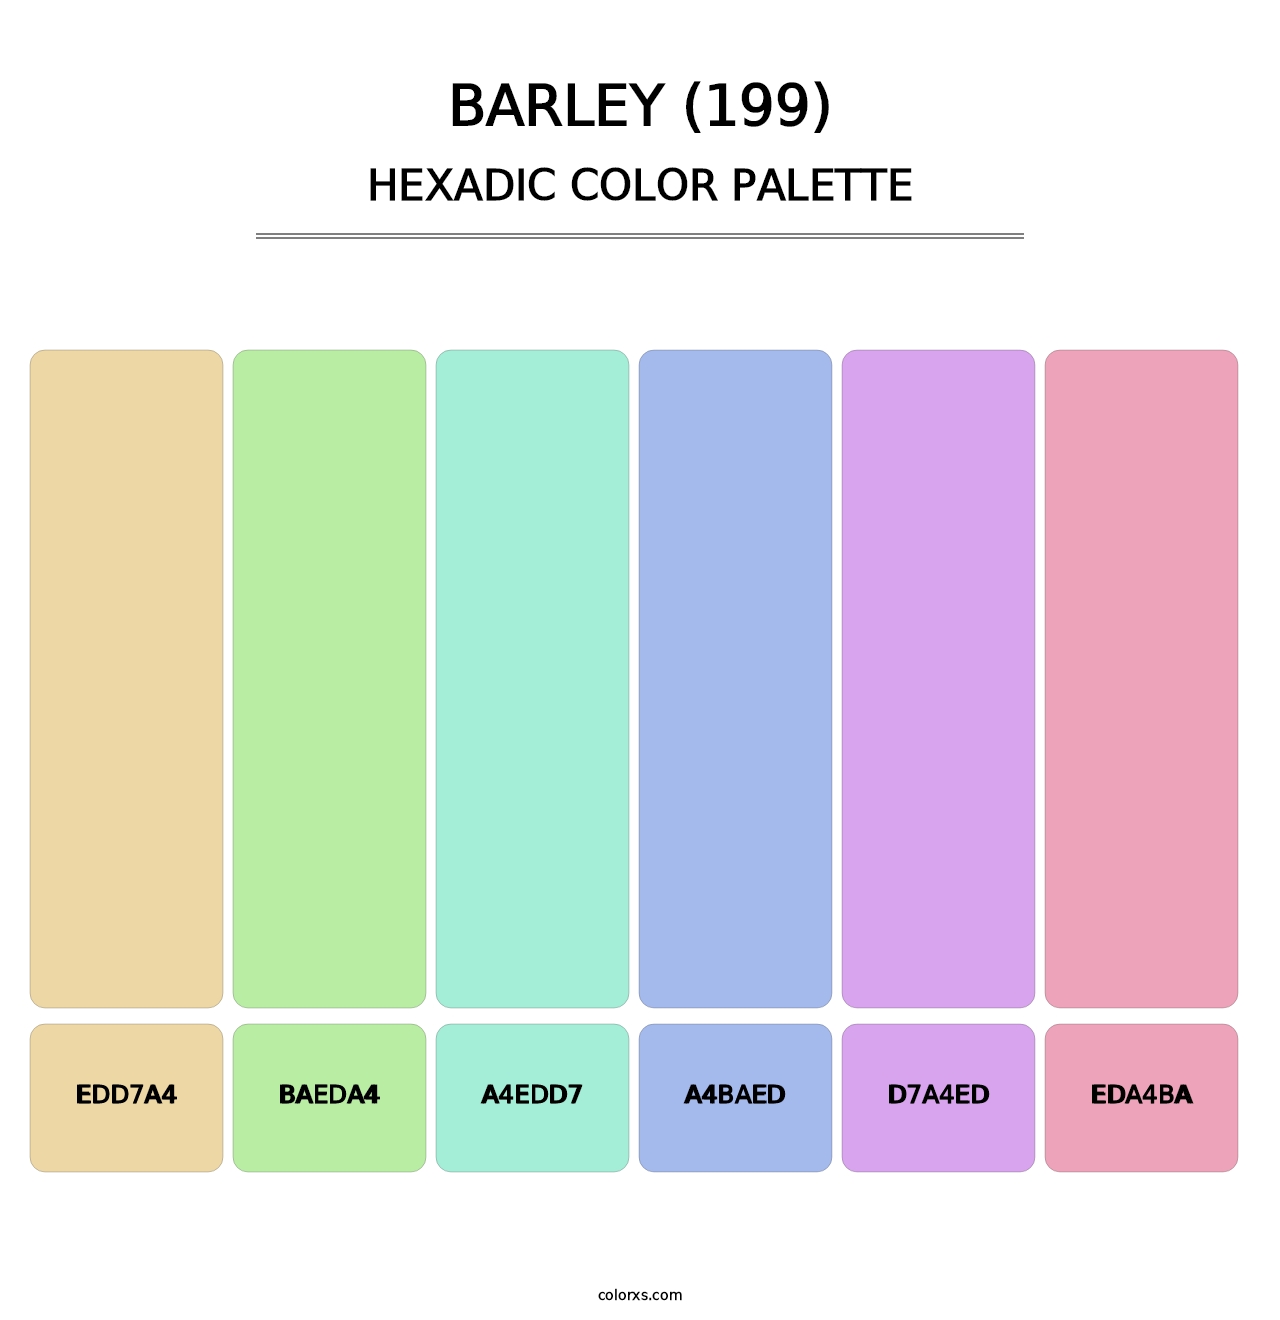 Barley (199) - Hexadic Color Palette